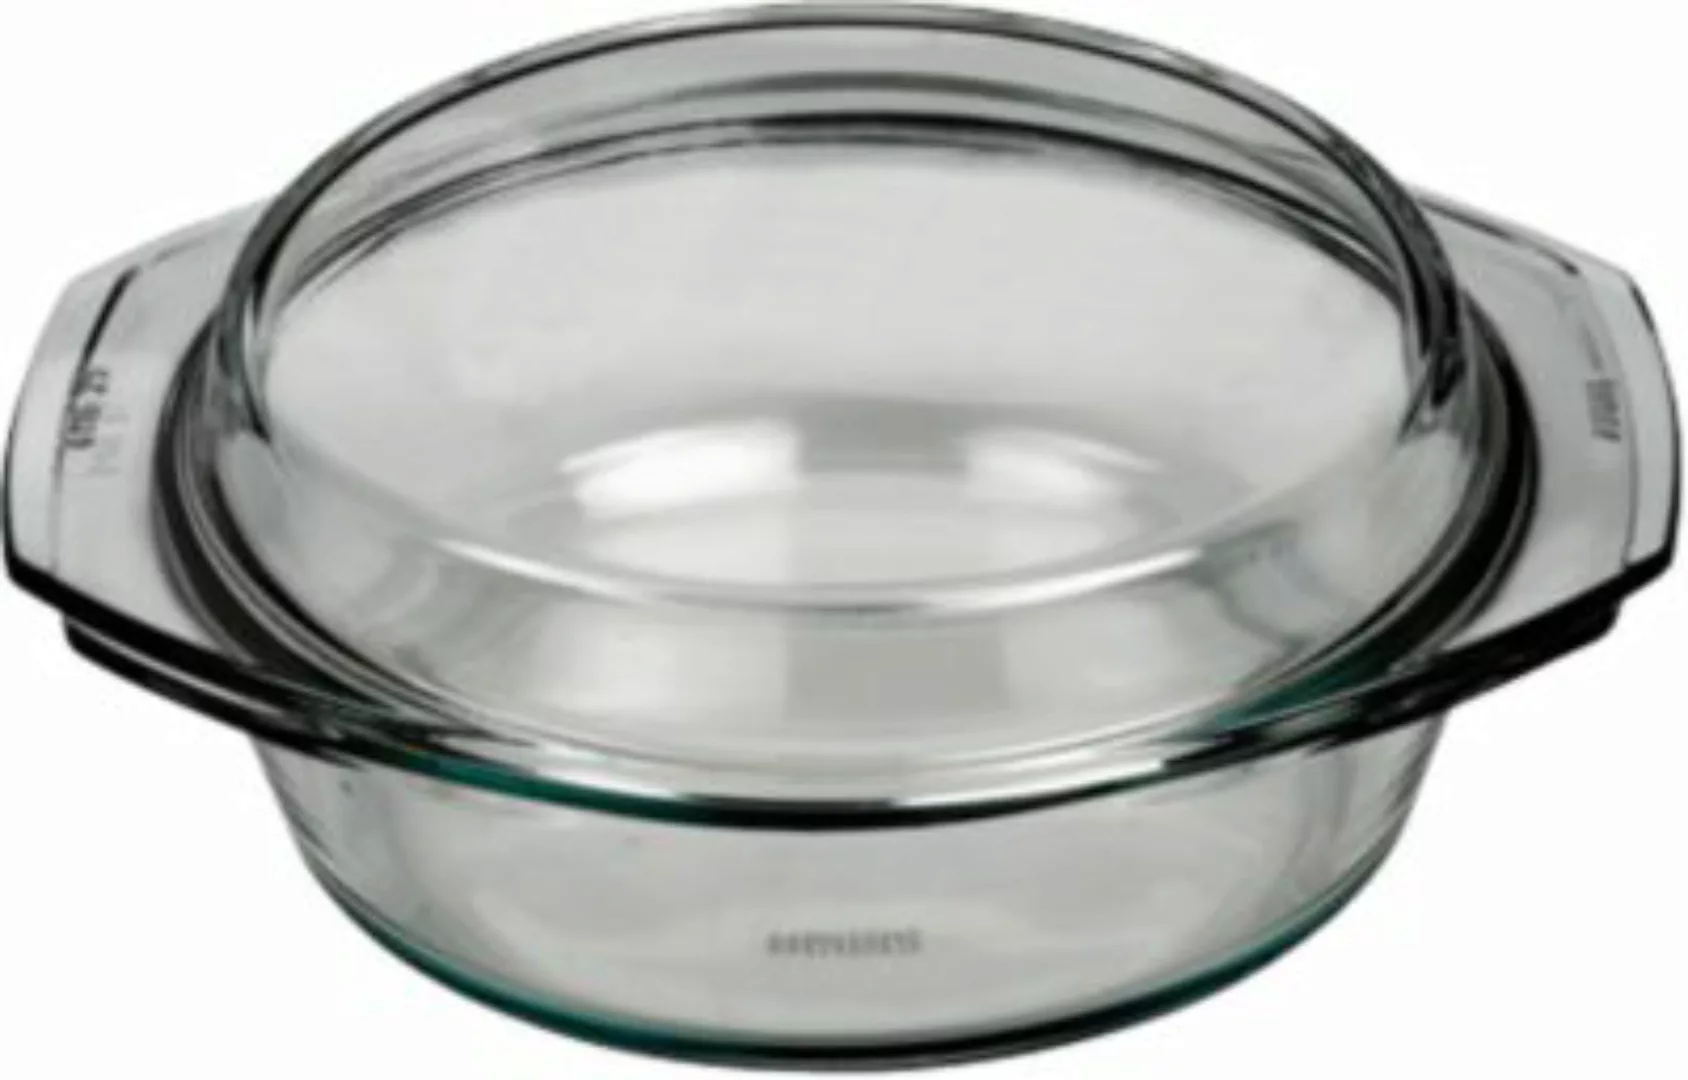 BOHEMIA Selection feuerfeste Glas Schüssel mit Deckel, bis 300°C, 1l farblo günstig online kaufen